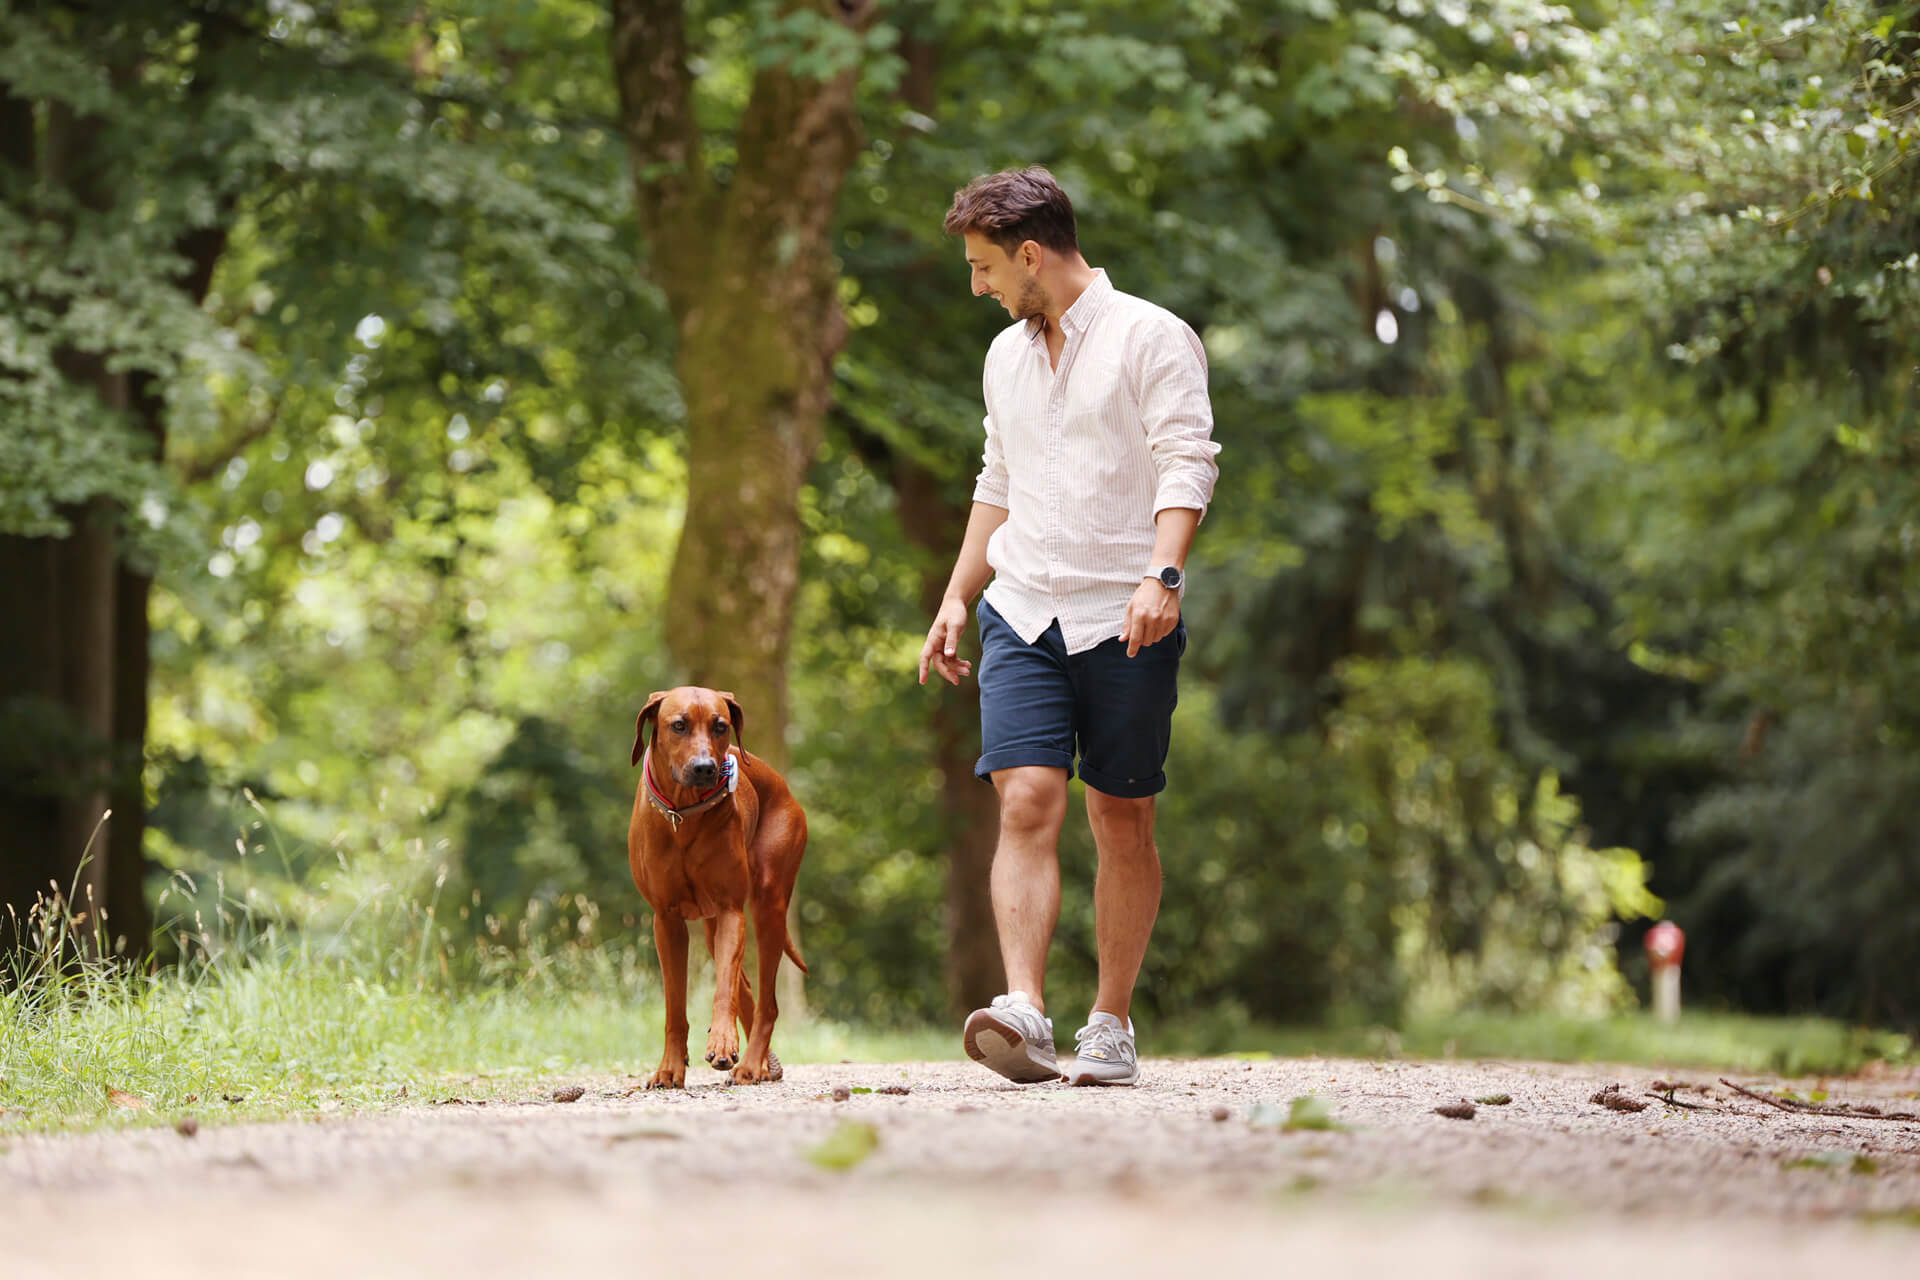 jeune homme en chemise et en shorts se promenant sur une allée en gravier avec un chien au poil brun portant un GPS Tractive